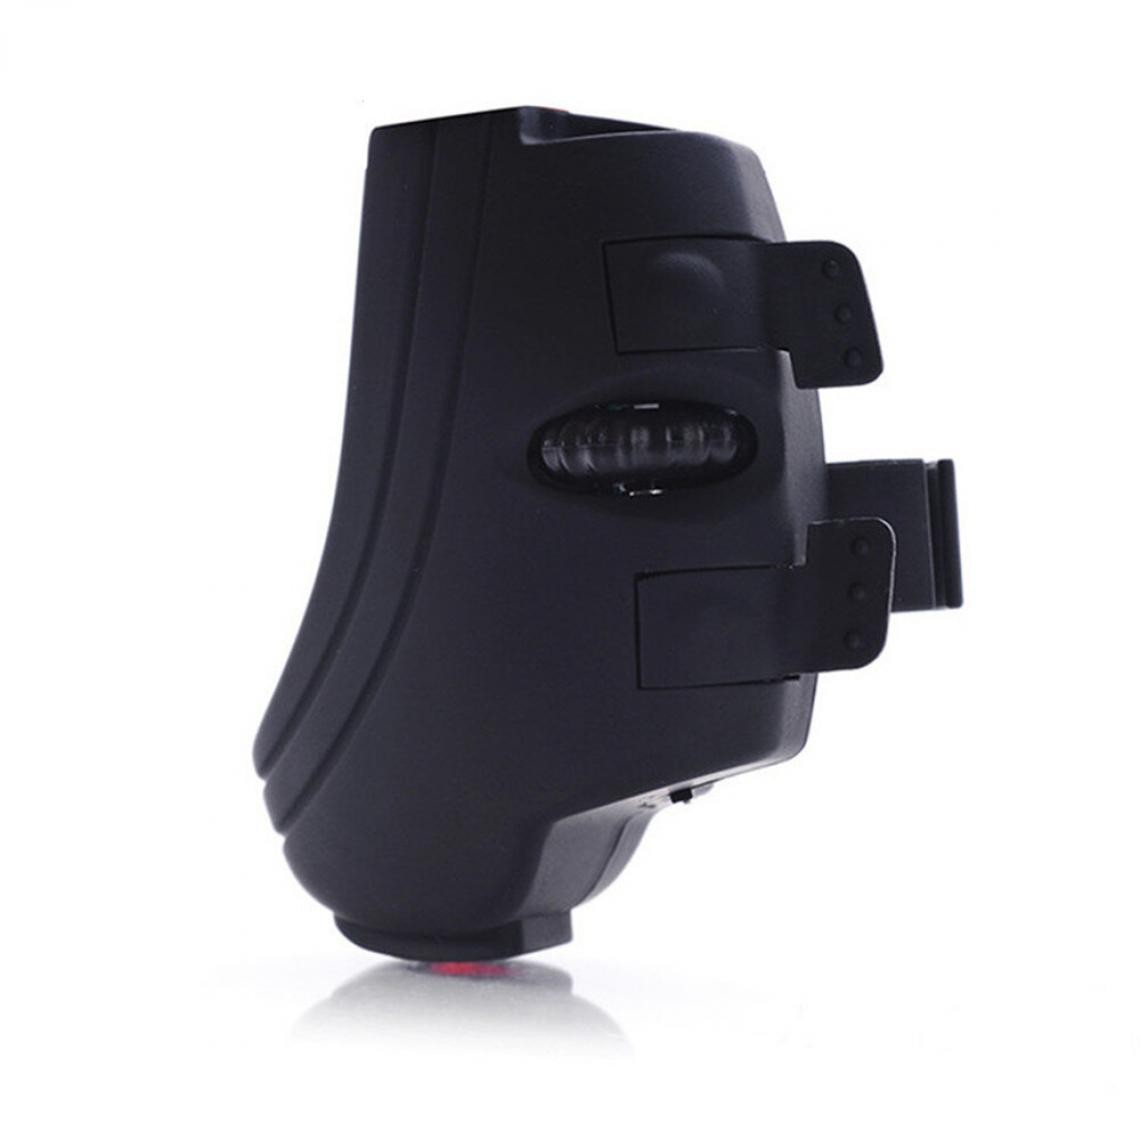 Universal - GM306B Bluetooth sans fil doigt souris mini, USB laser optique souris rechargeable, boucle acné souris pour PC portable tablette(Le noir) - Souris